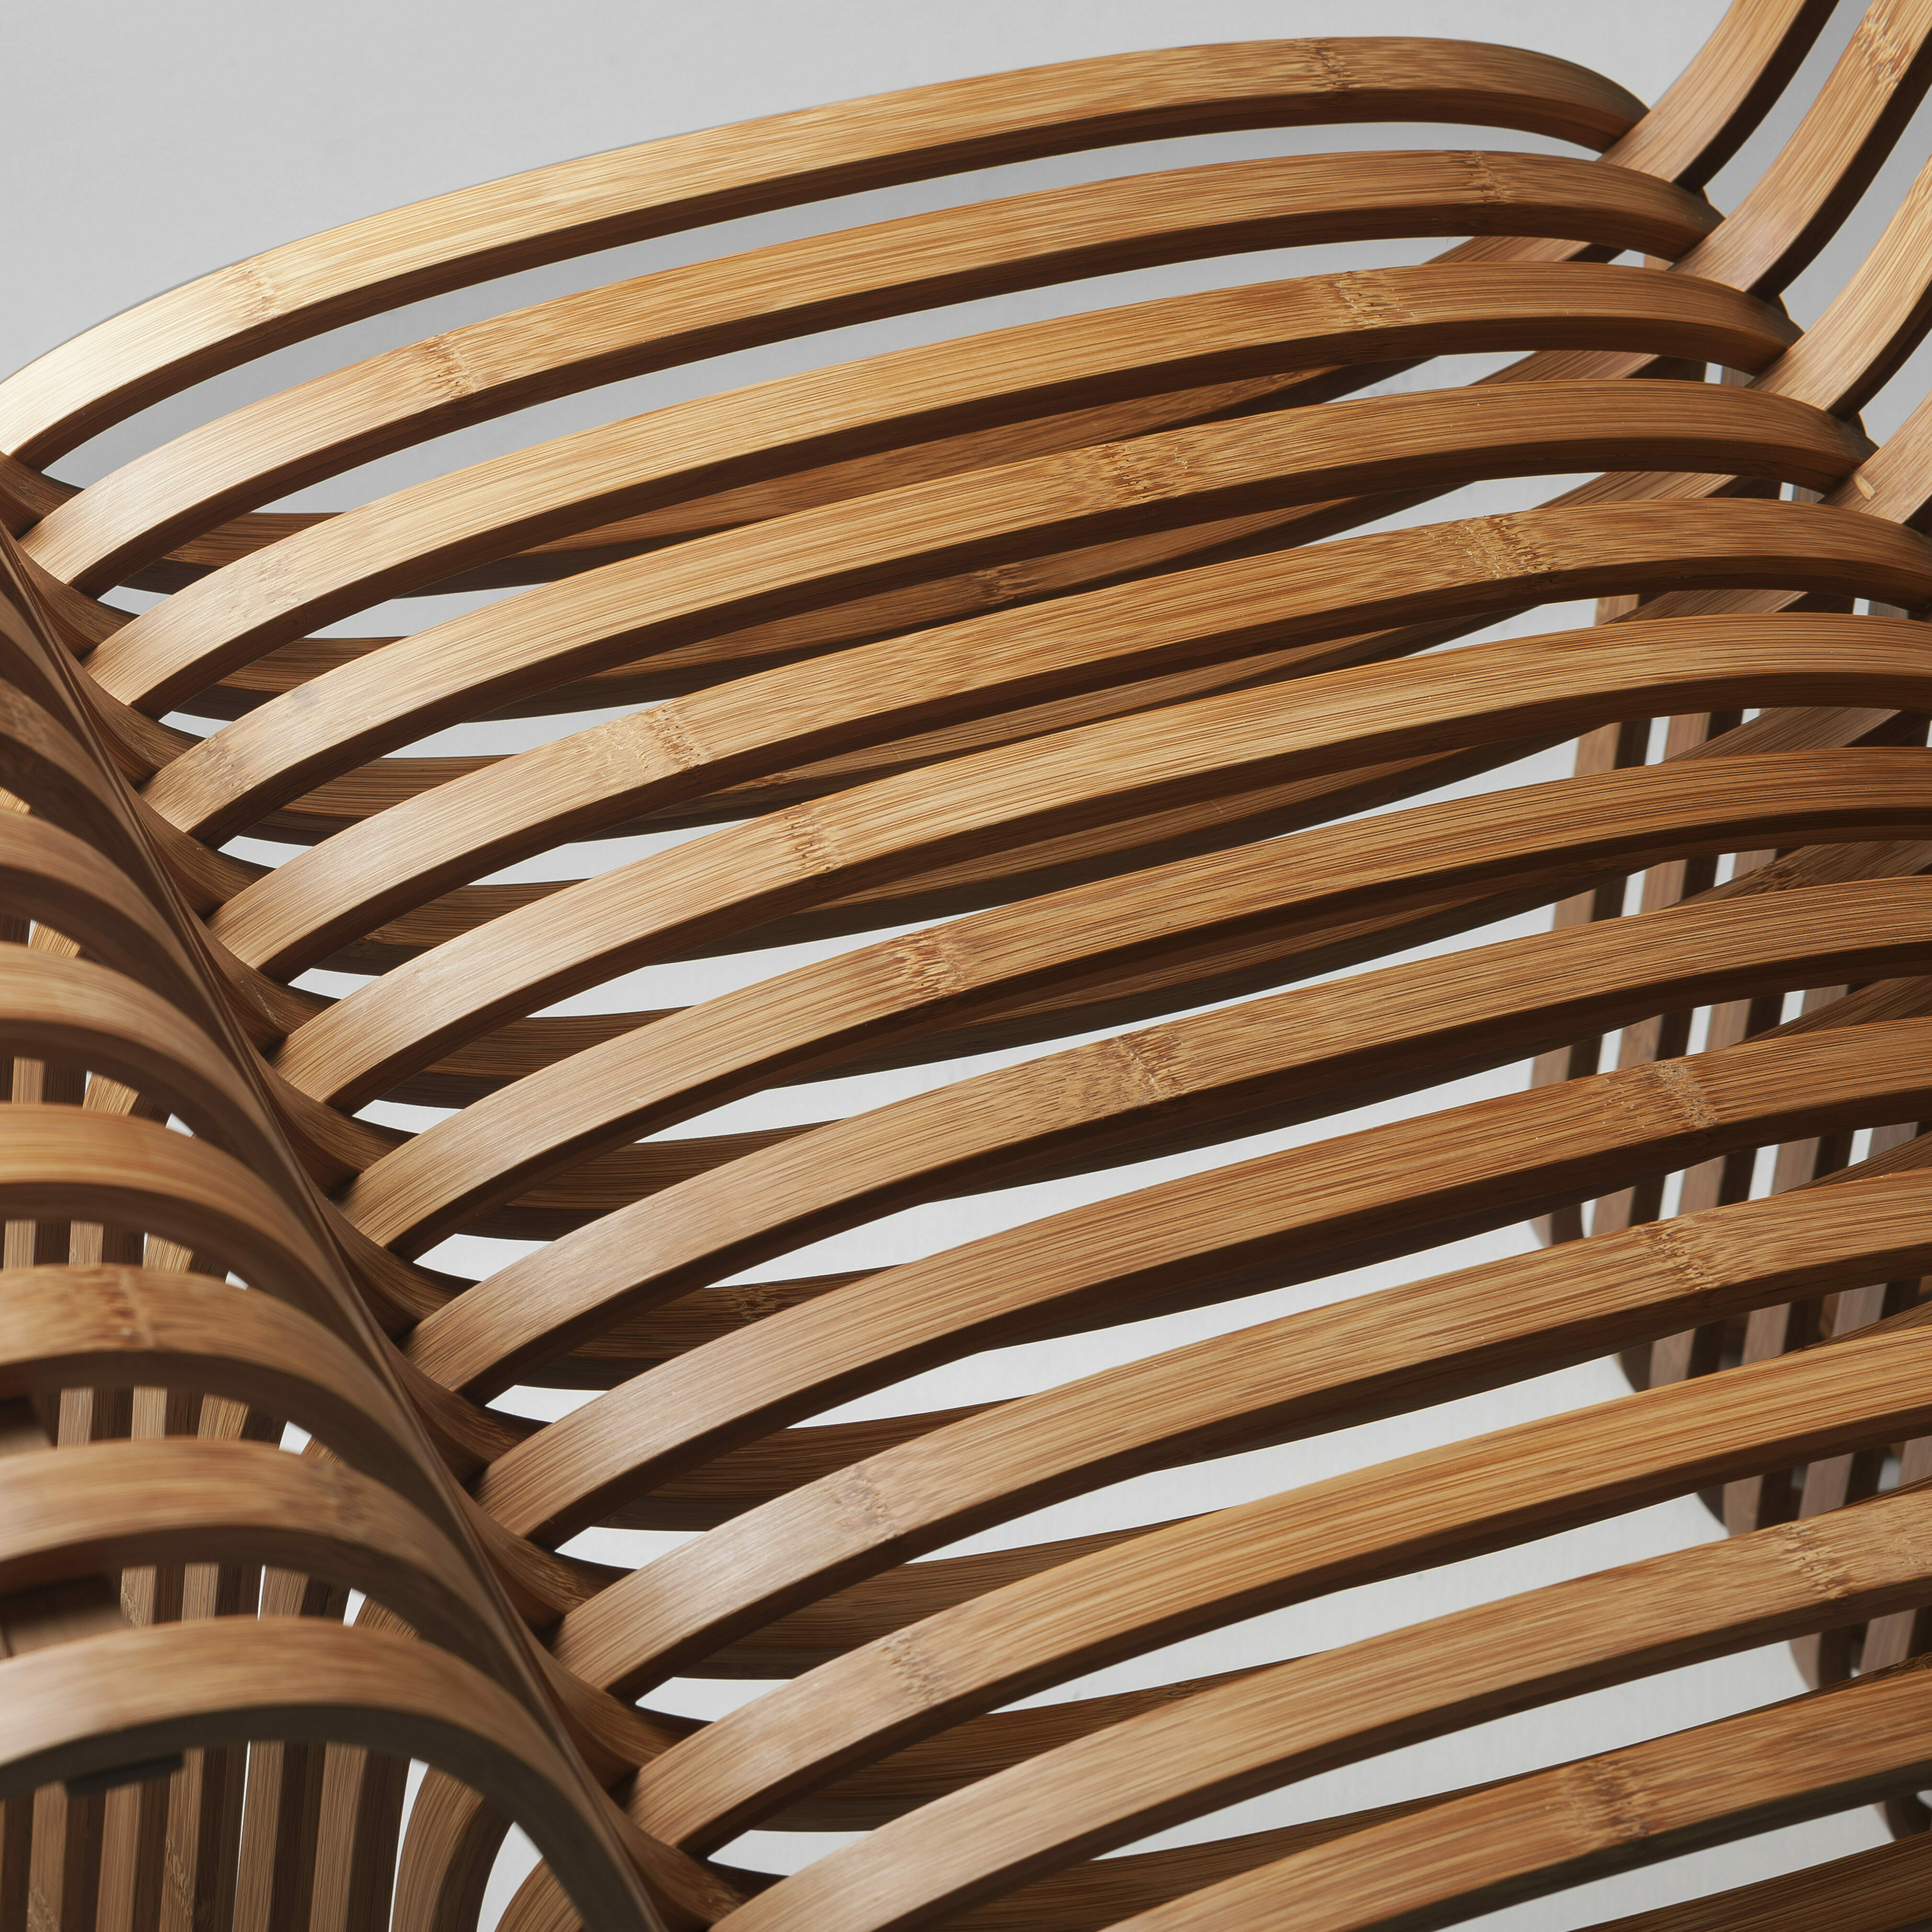 bow tie chair gridesign studio bambus stuhl dunkel detailansicht design inneneinrichtung einrichtungsidee